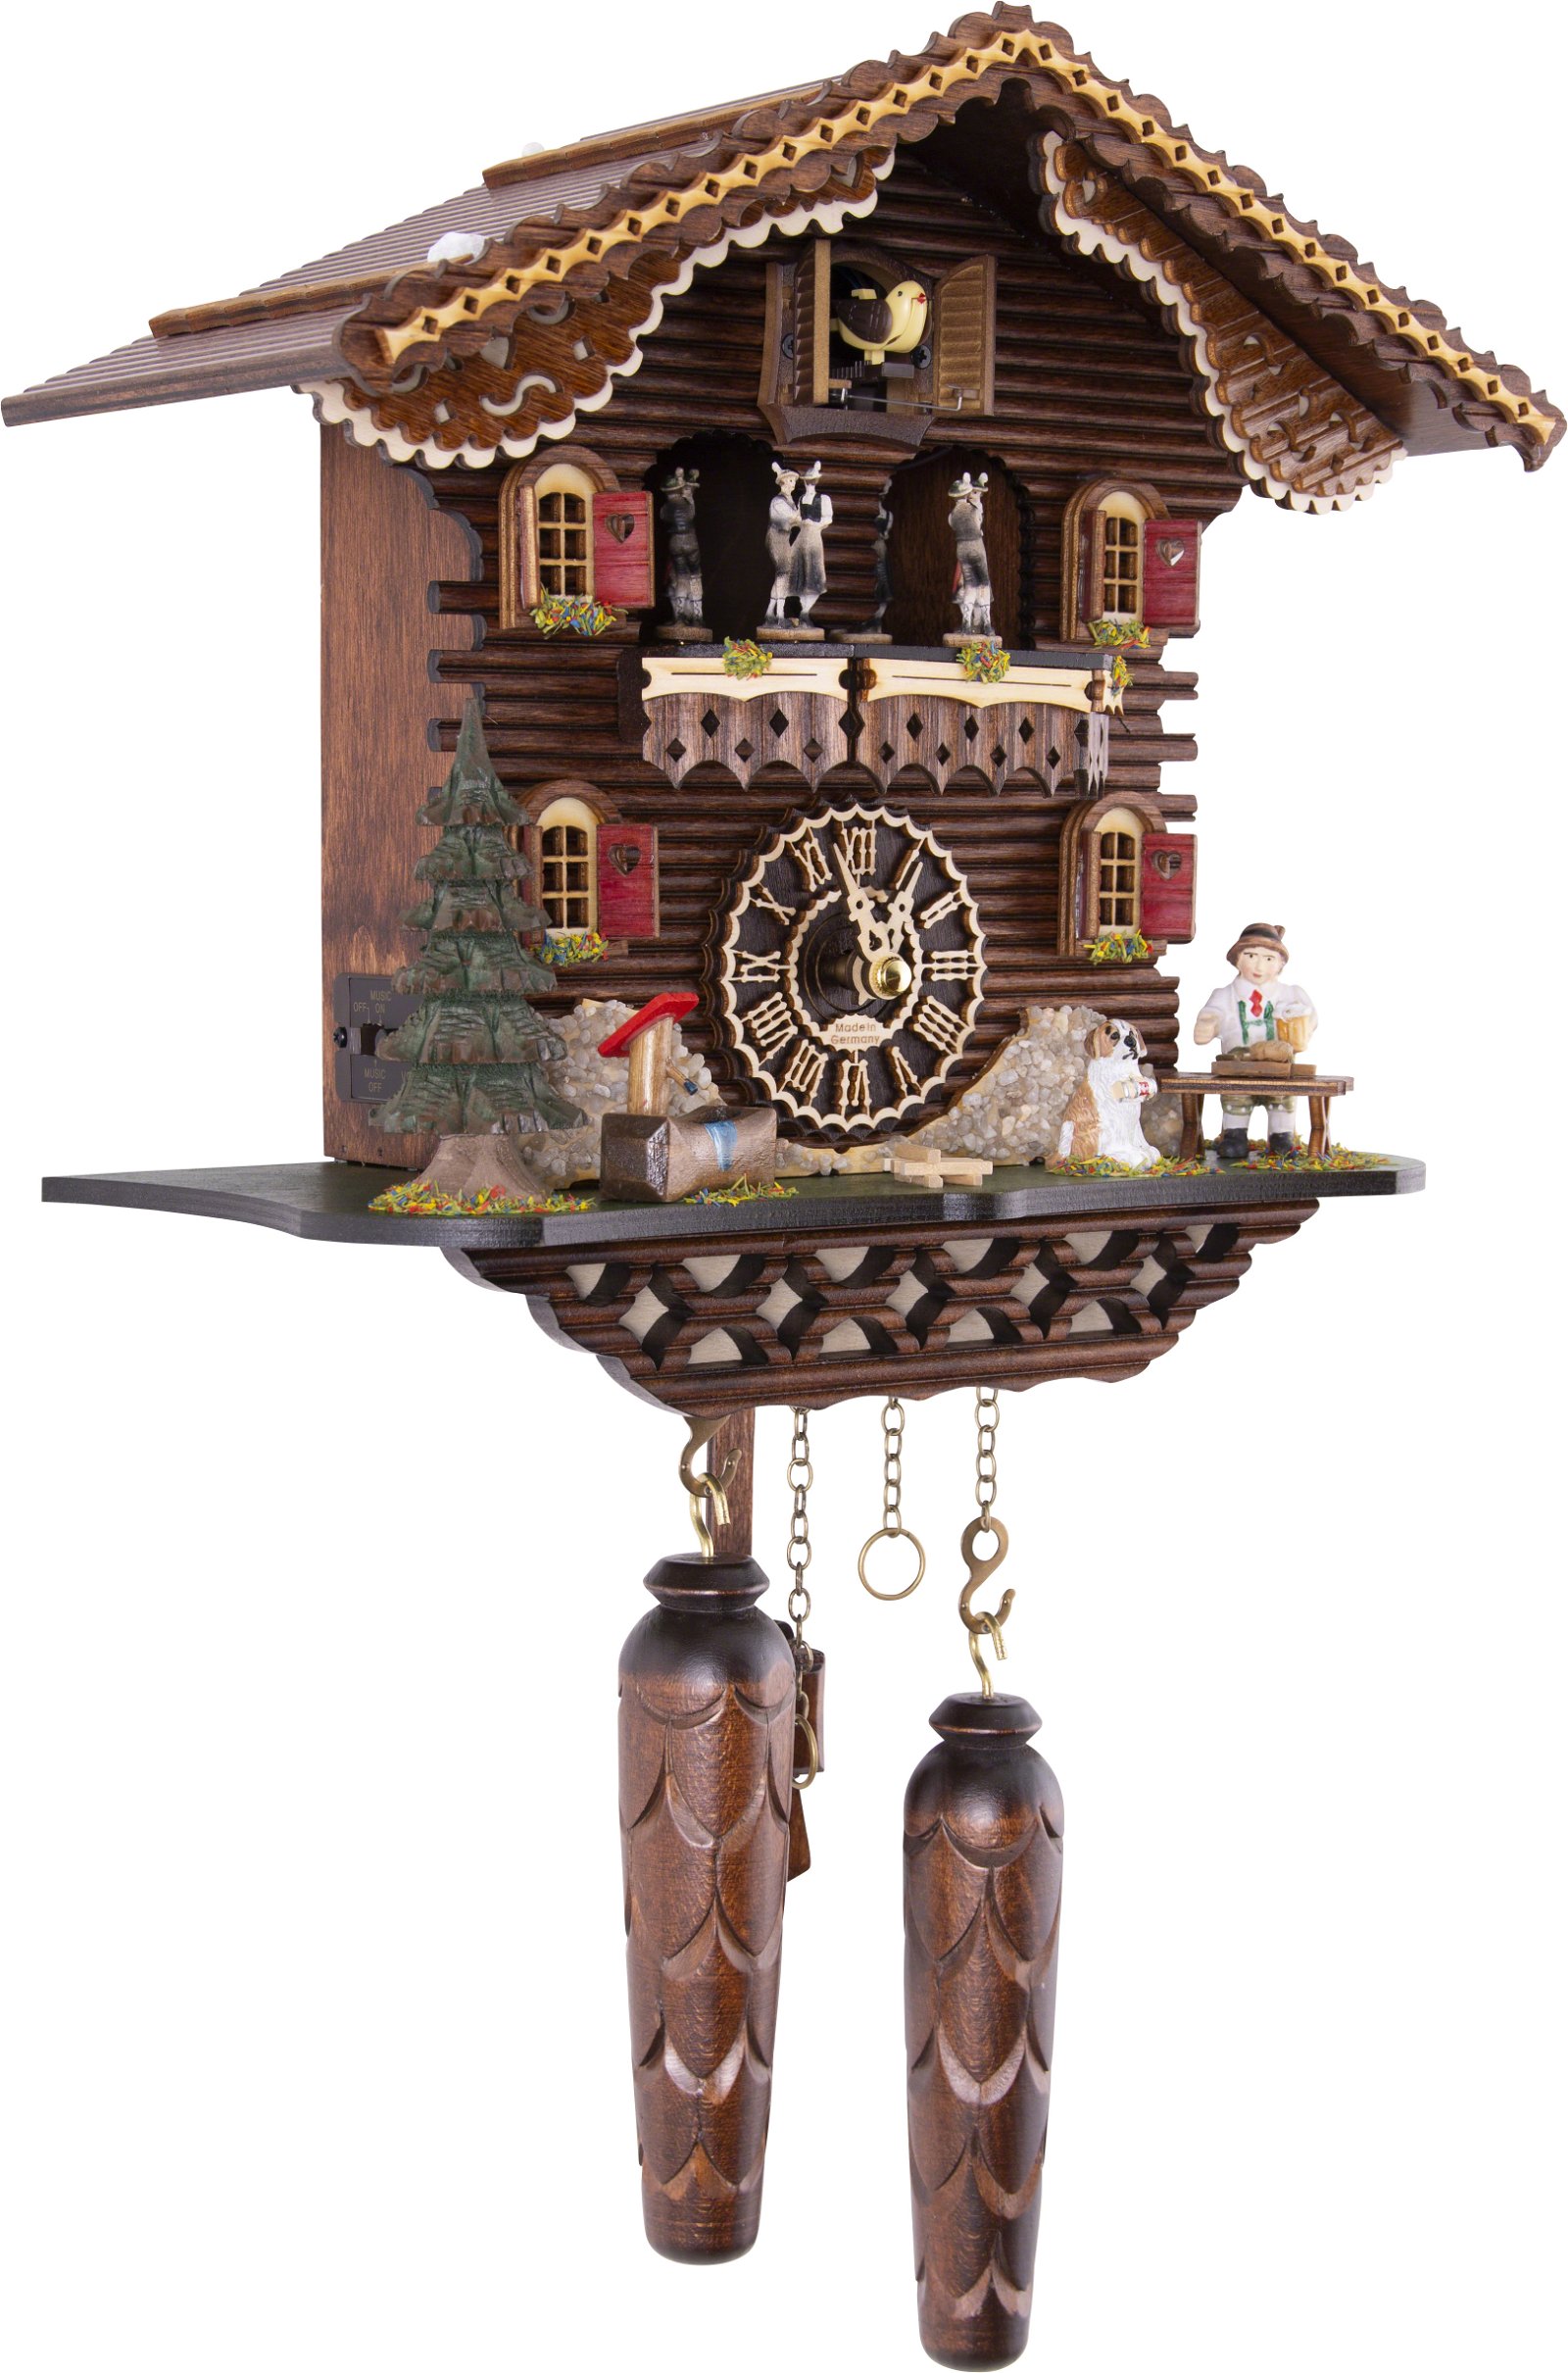 Kuckucksuhr Quarz-Uhrwerk Chalet-Stil 30cm von Trenkle Uhren